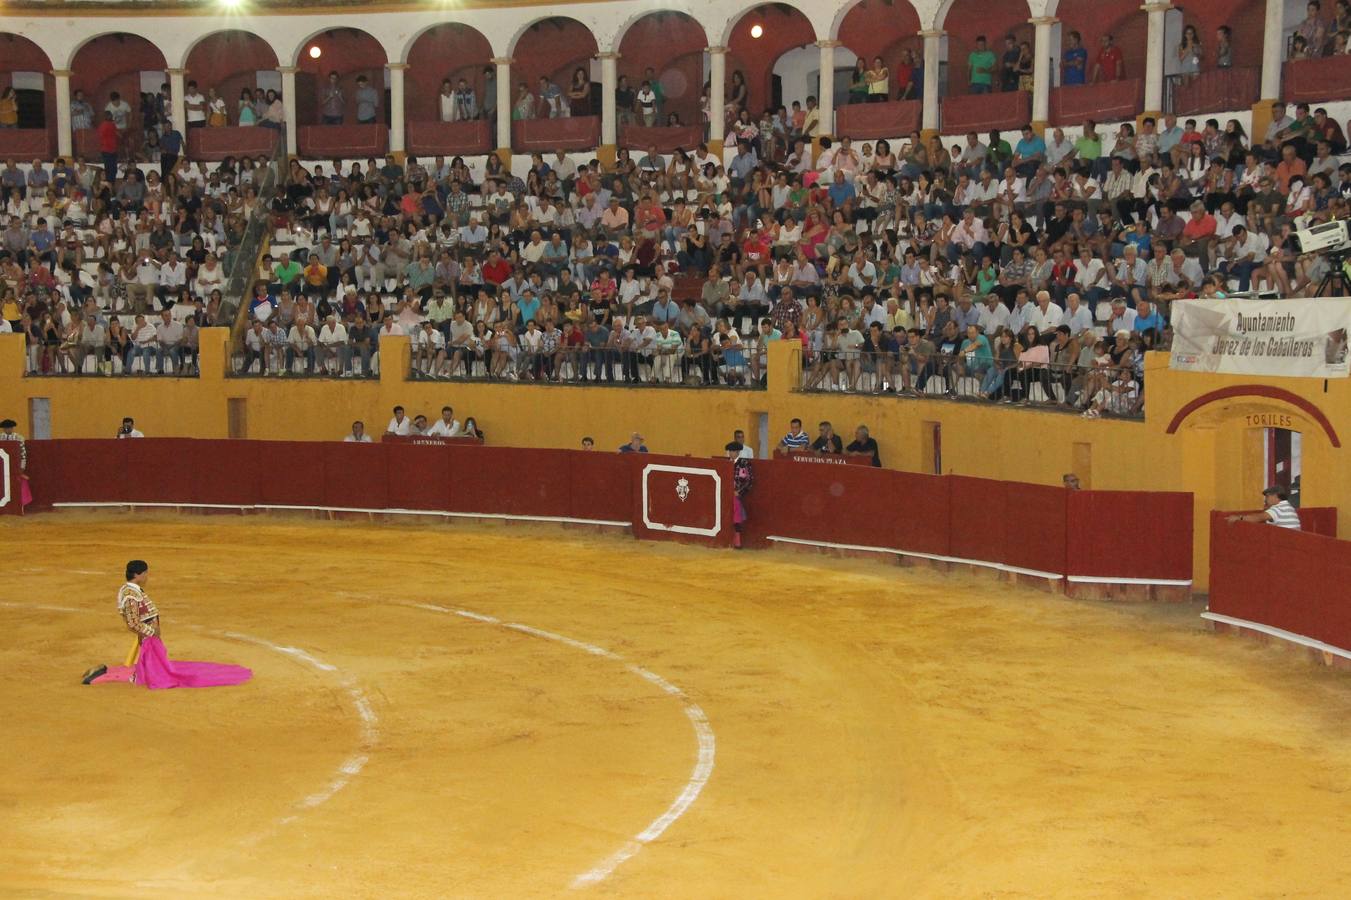 Lleno de público en el centenario coso jerezano en la final del V Certamen de novilladas en clases prácticas de la Diputación de Badajoz